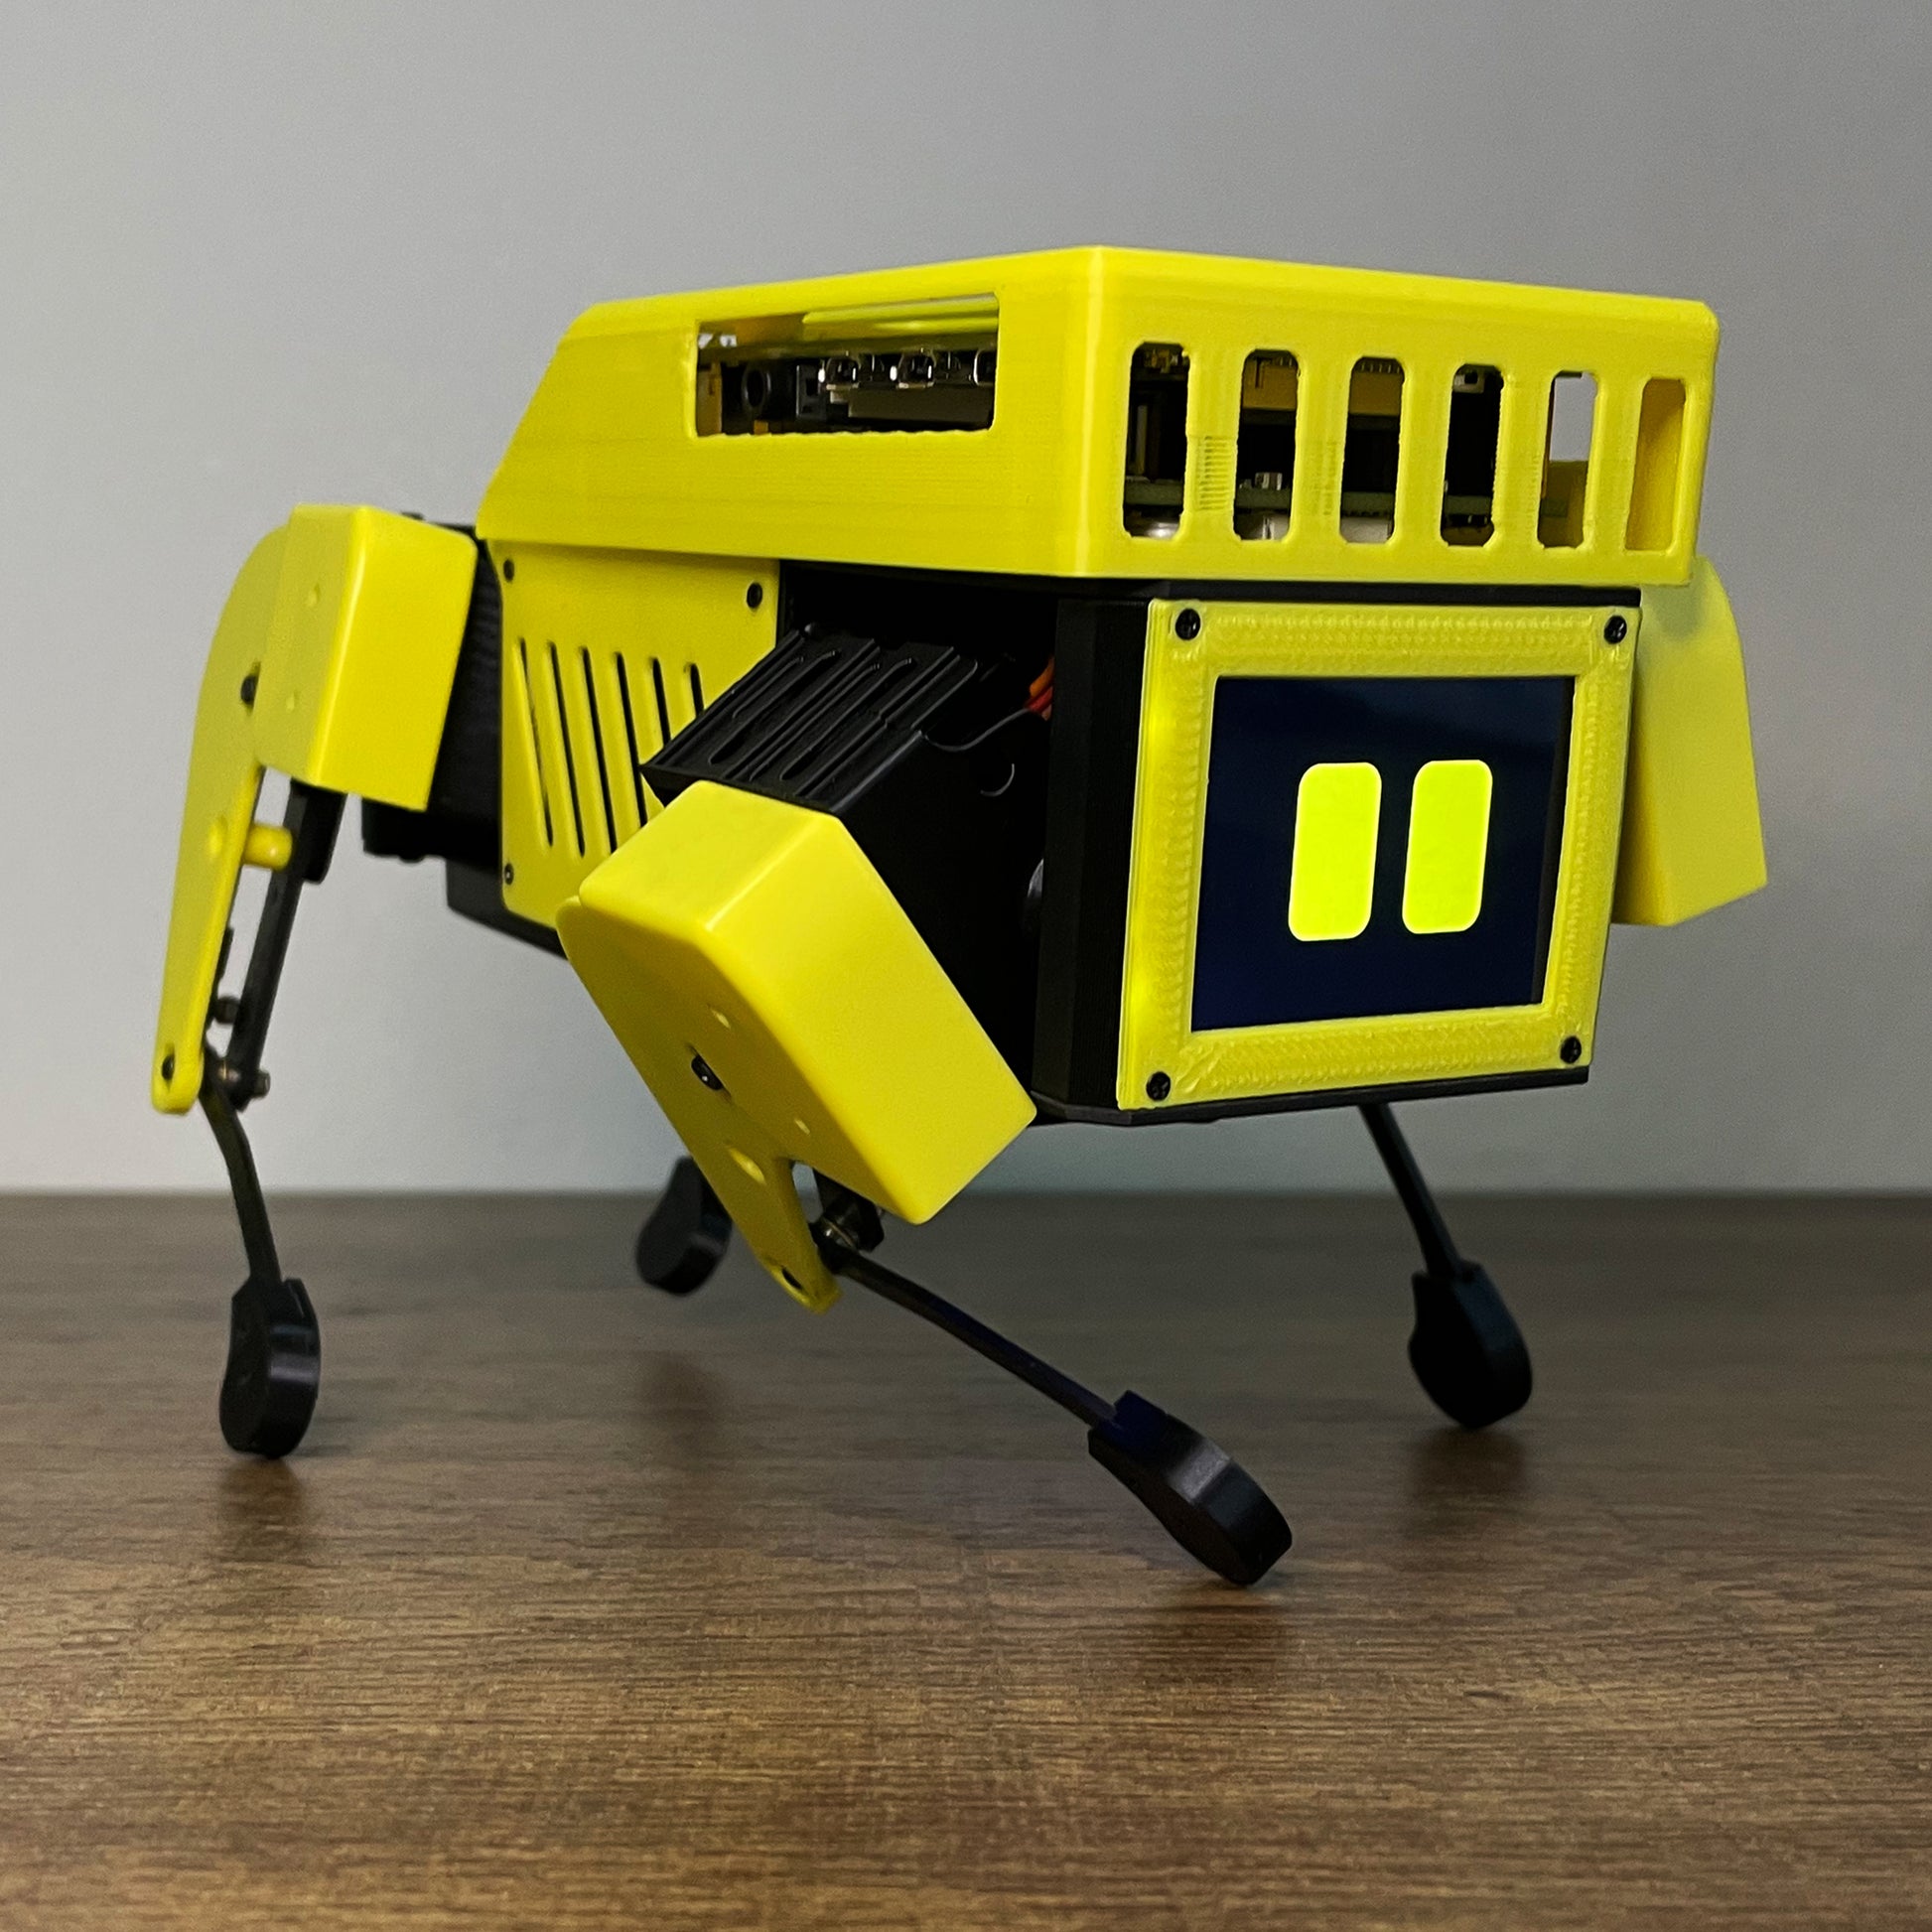 MangDang Mini Pupper: AI Robot, Smart Robot, Quadruped Robot, Educatio